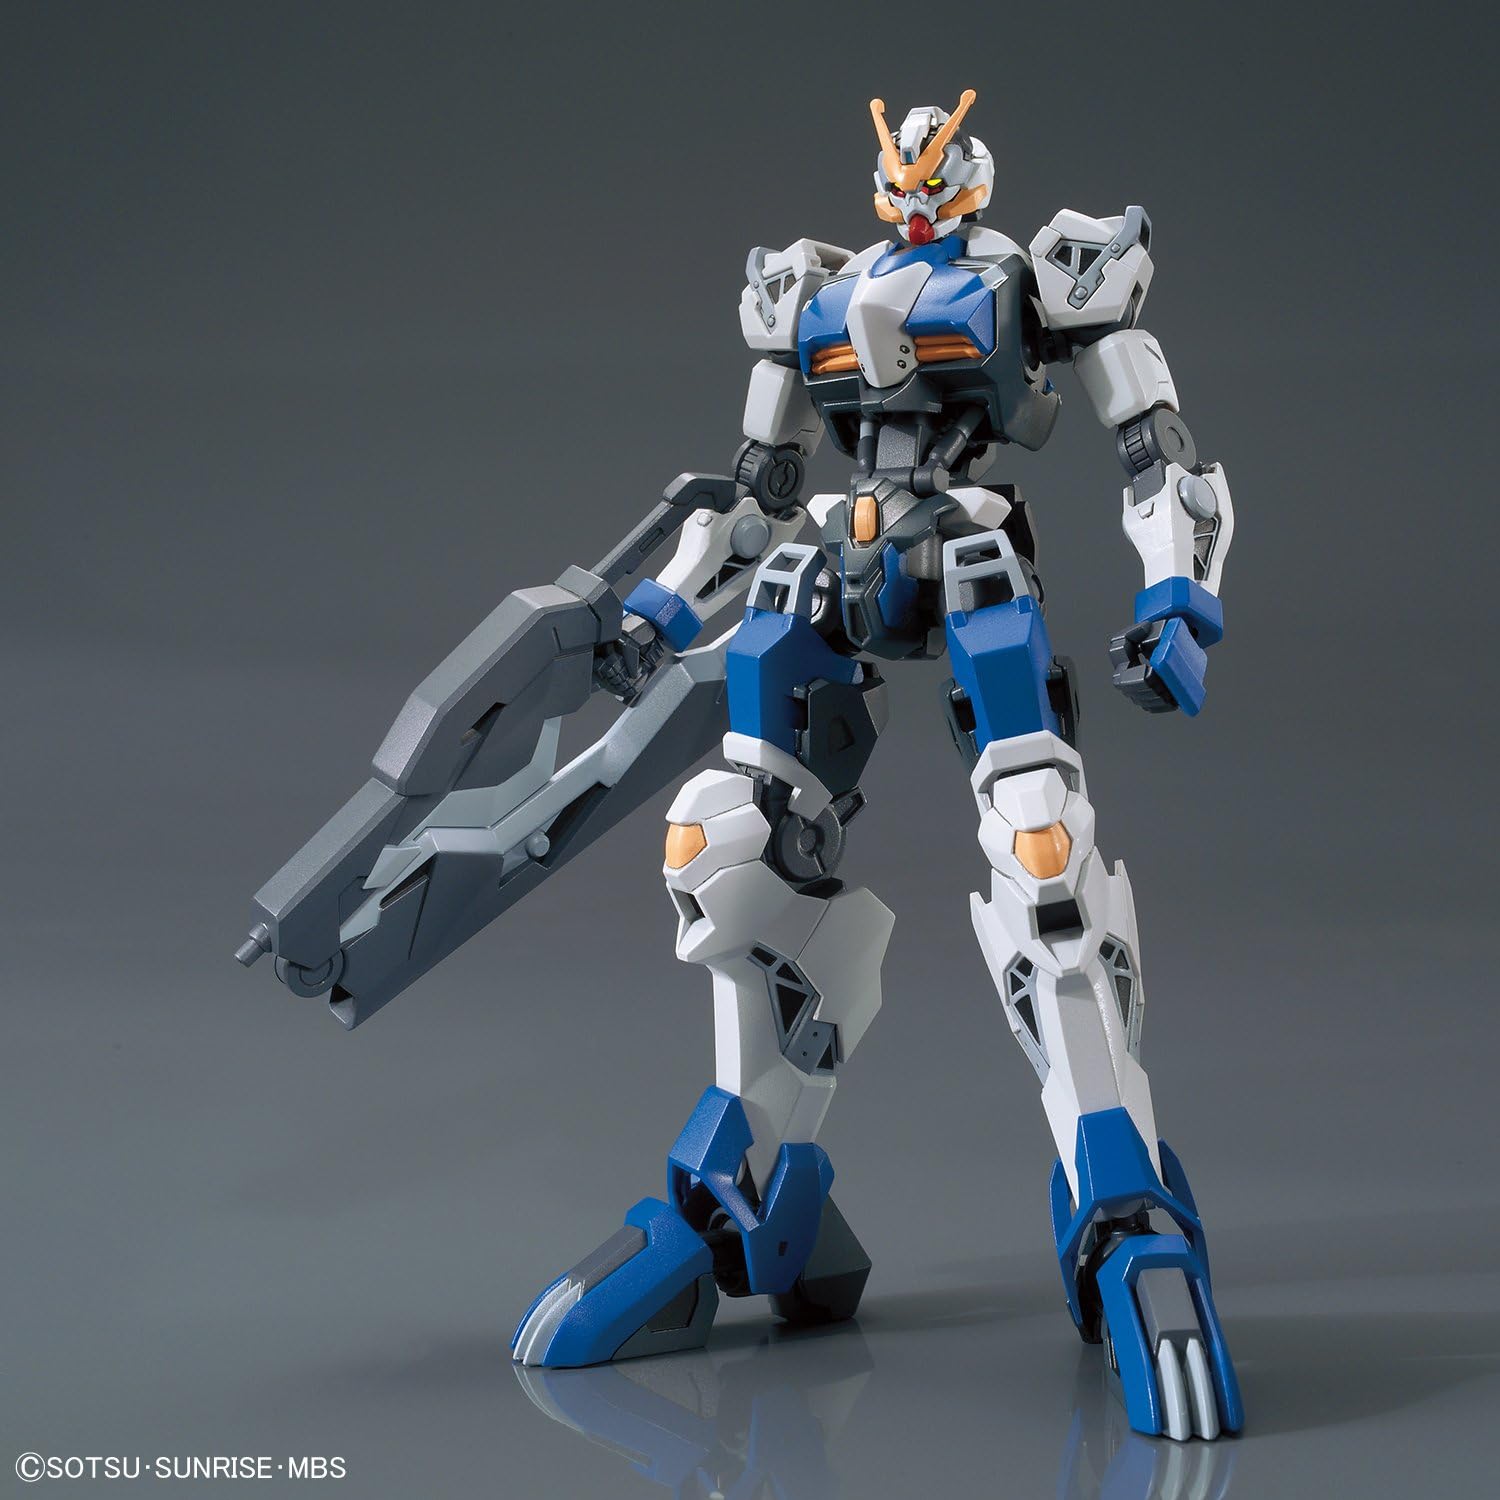 1/144 HG Gundam Dantalion | animota